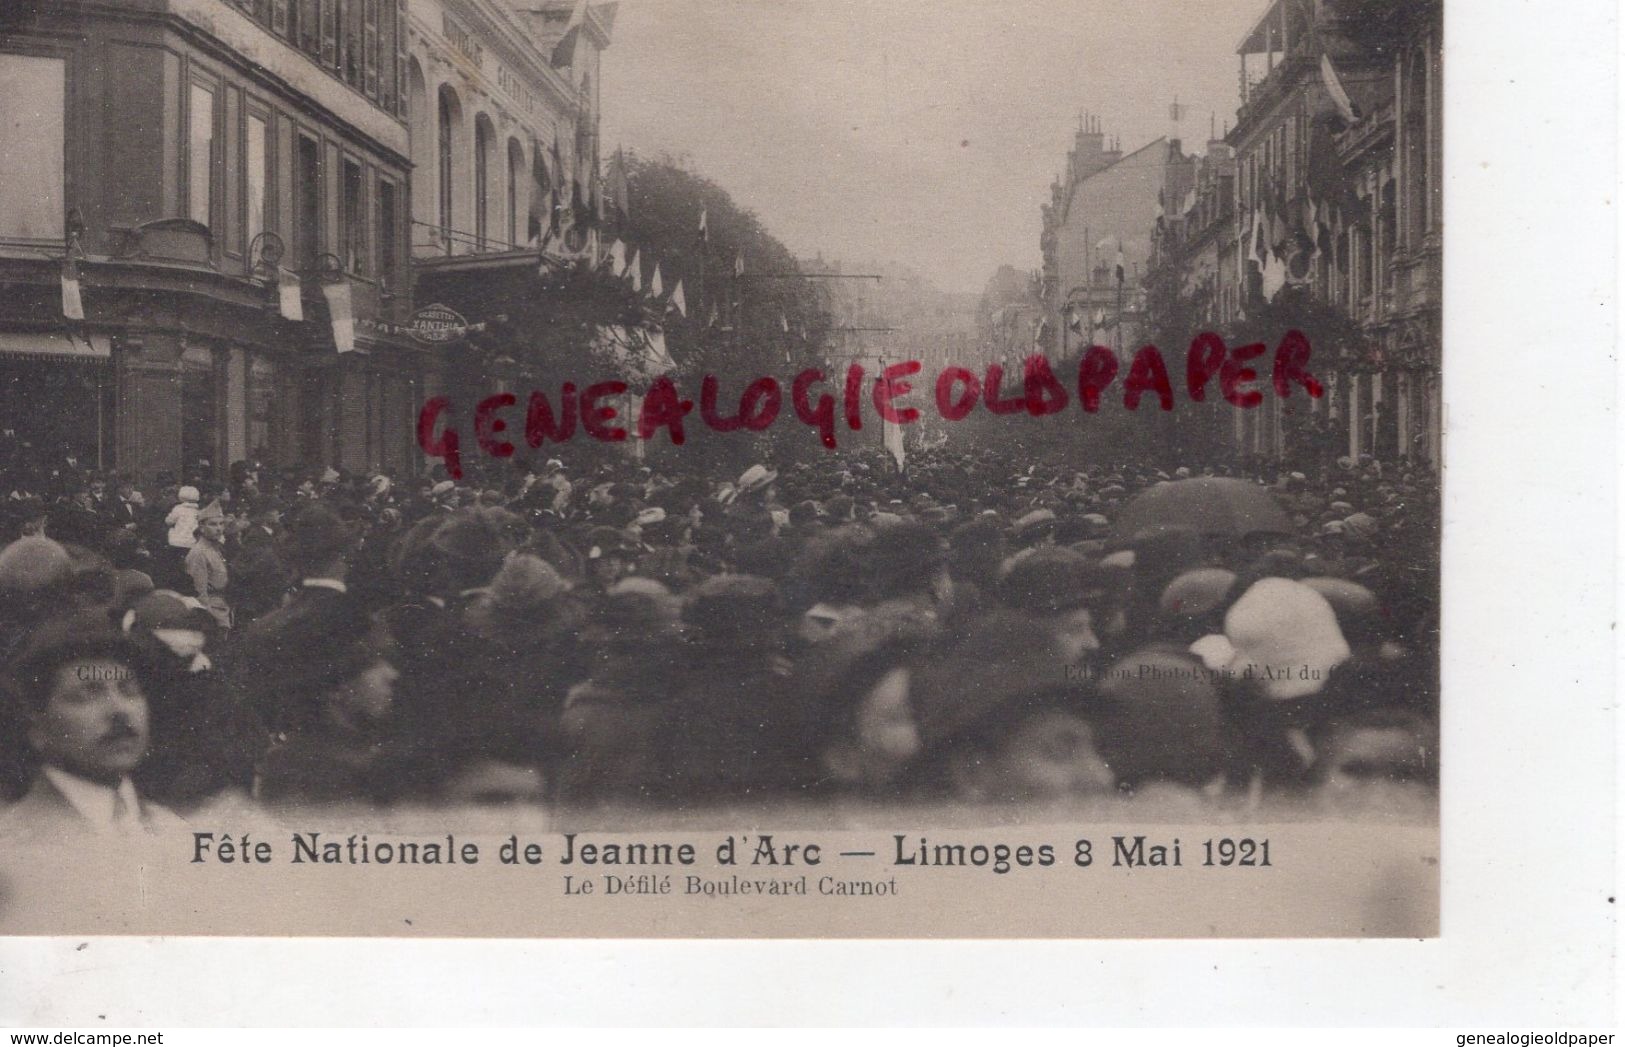 87 - LIMOGES - FETE NATIONALE DE JEANNE D' ARC- 8 MAI 1921- LE DEFILE BOULEVARD CARNOT- EDITION PAC - Limoges